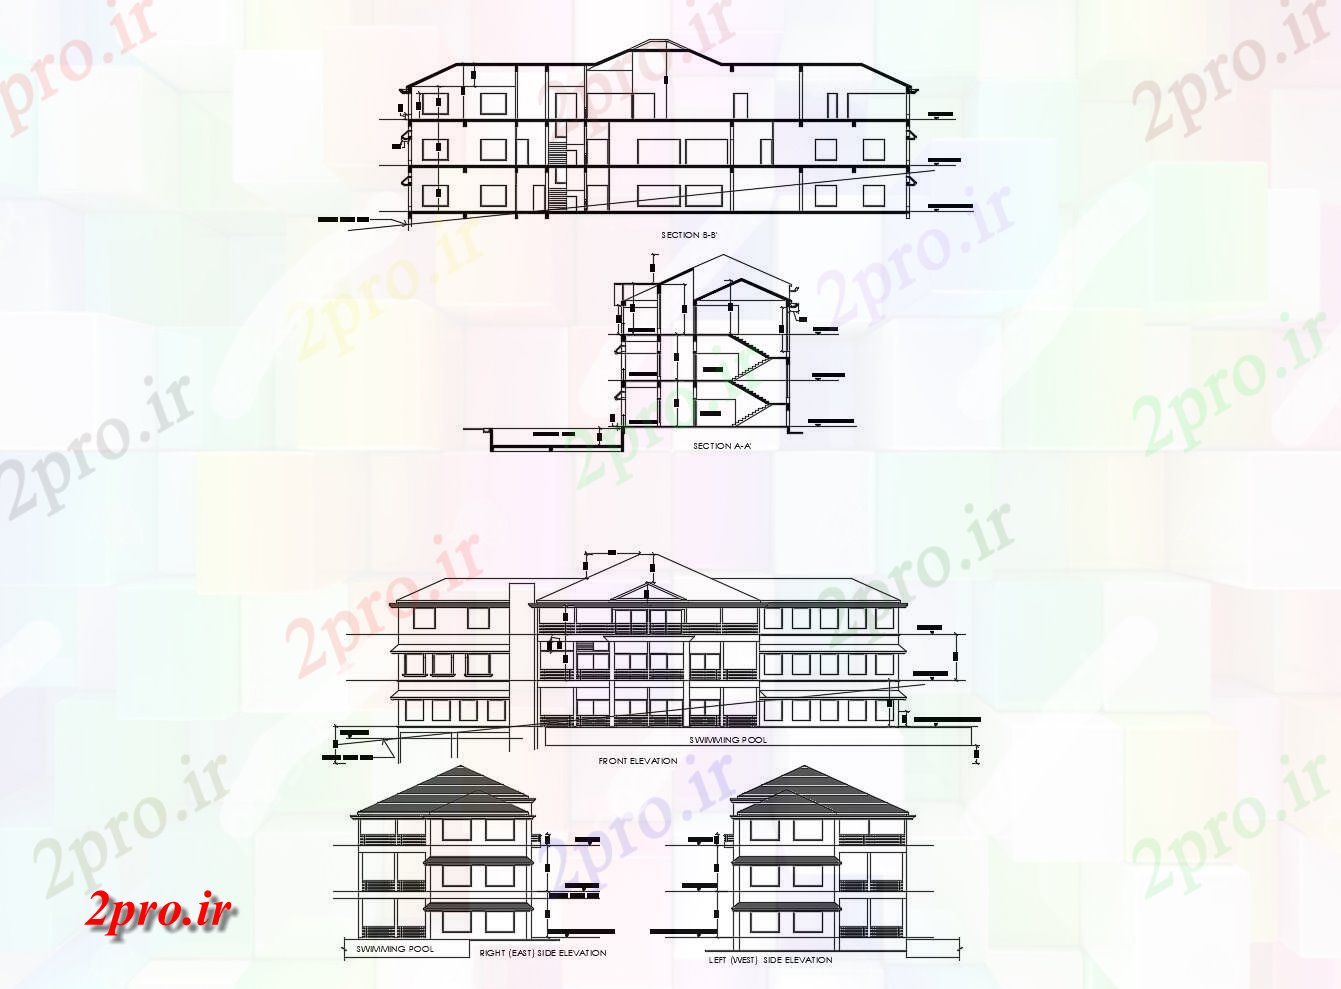 دانلود نقشه باشگاه طرحی طبقه از محل باشگاه وانجمن با ابعاد جزئیات 11 در 41 متر (کد86873)